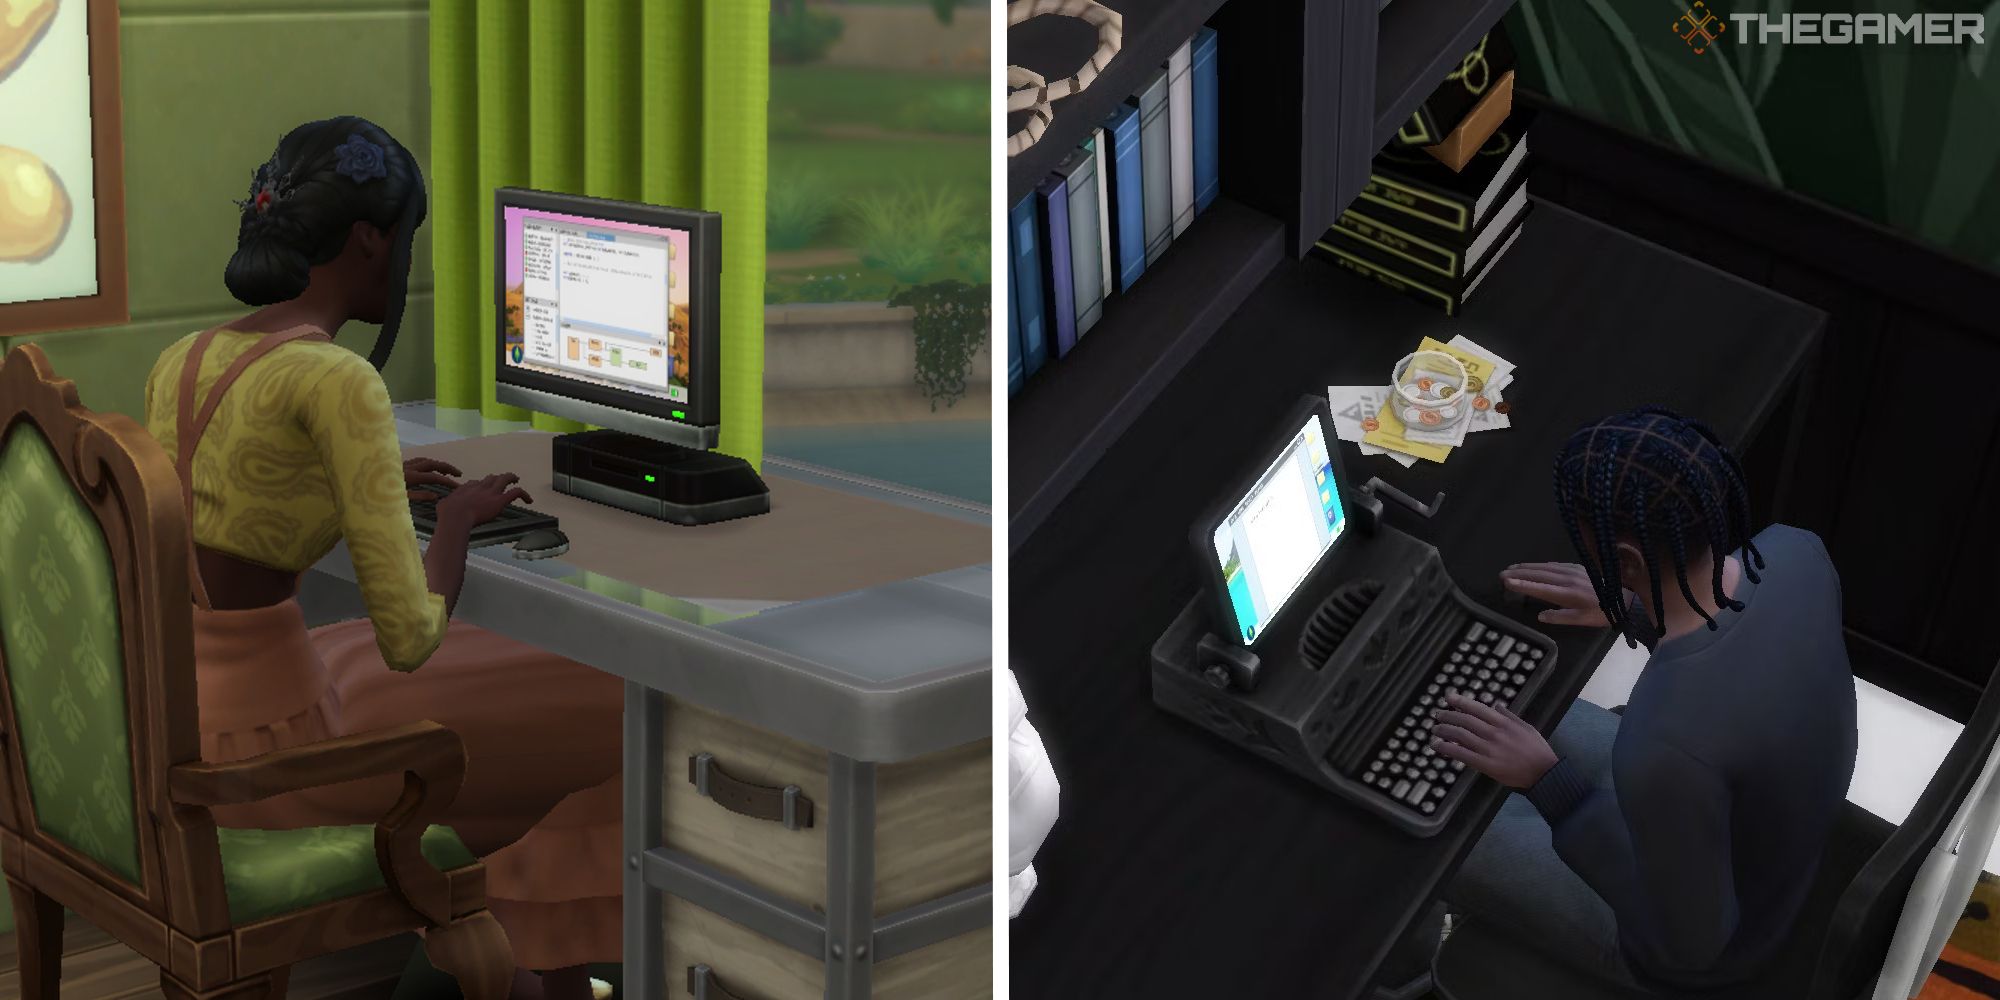 Sims 4 geteiltes Bild, das zwei Sims auf Computern zeigt